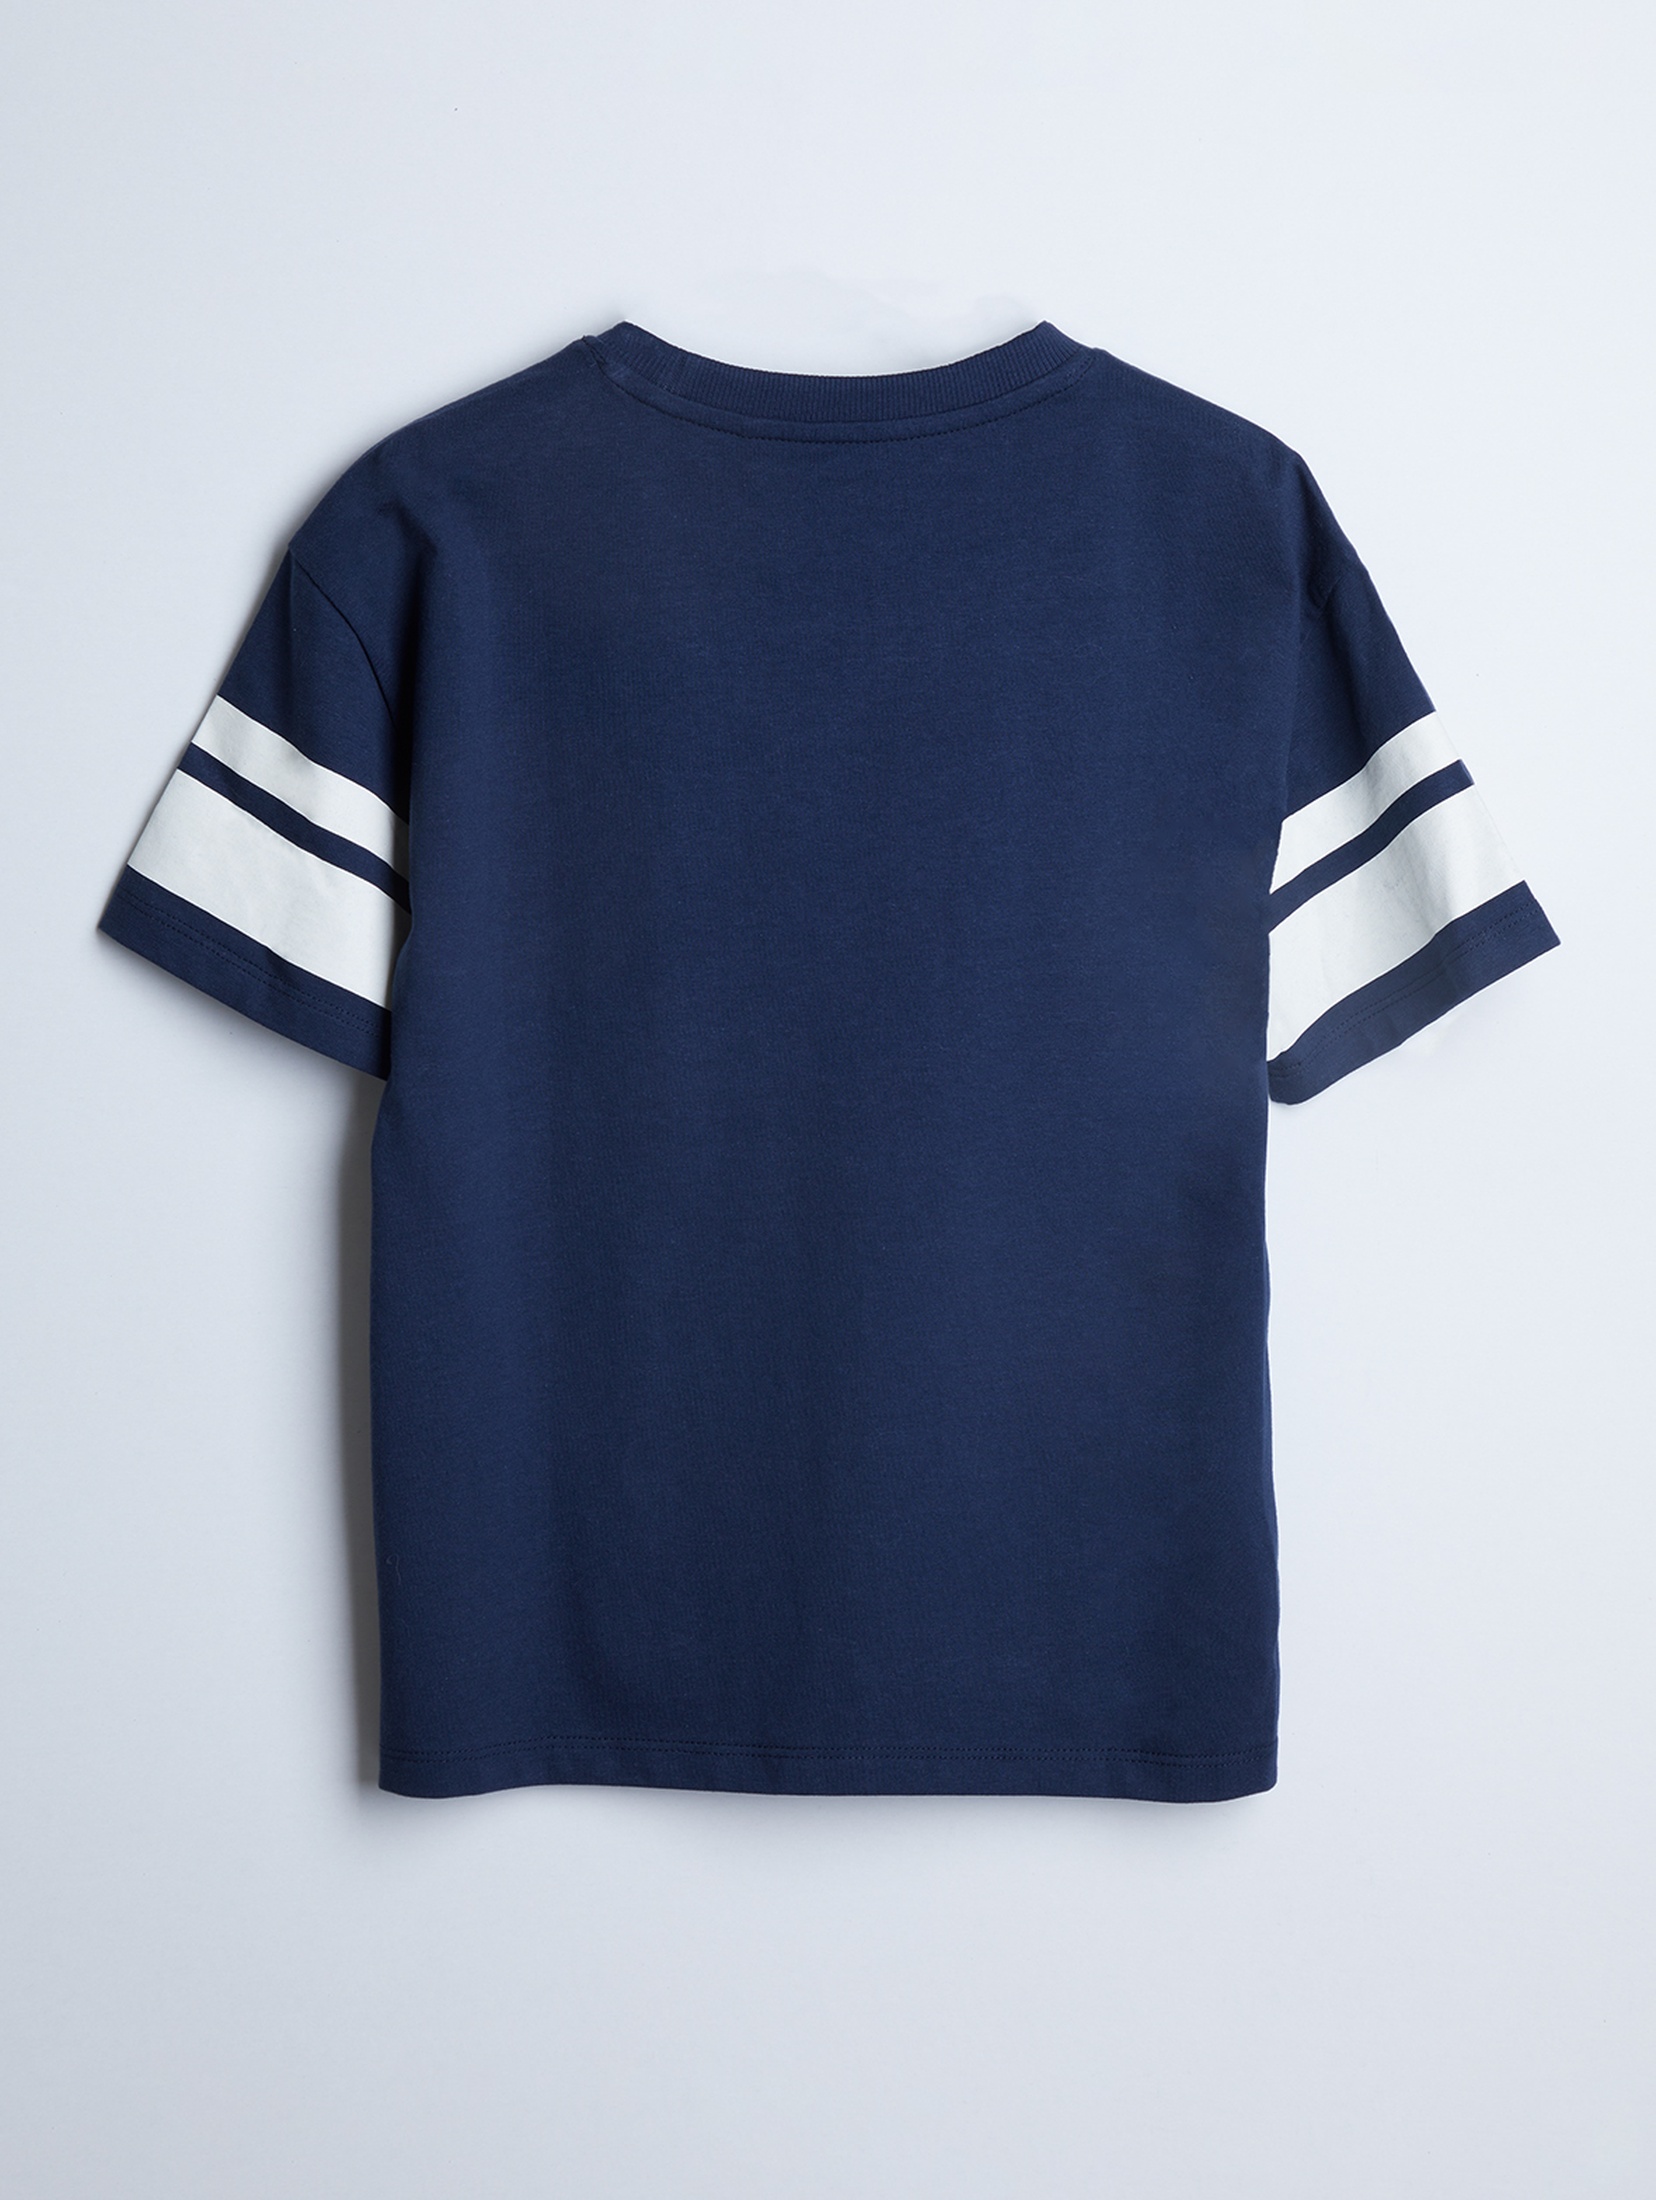 T-shirt bawełniany granatowy - Allstar College - unisex - Limited Edition